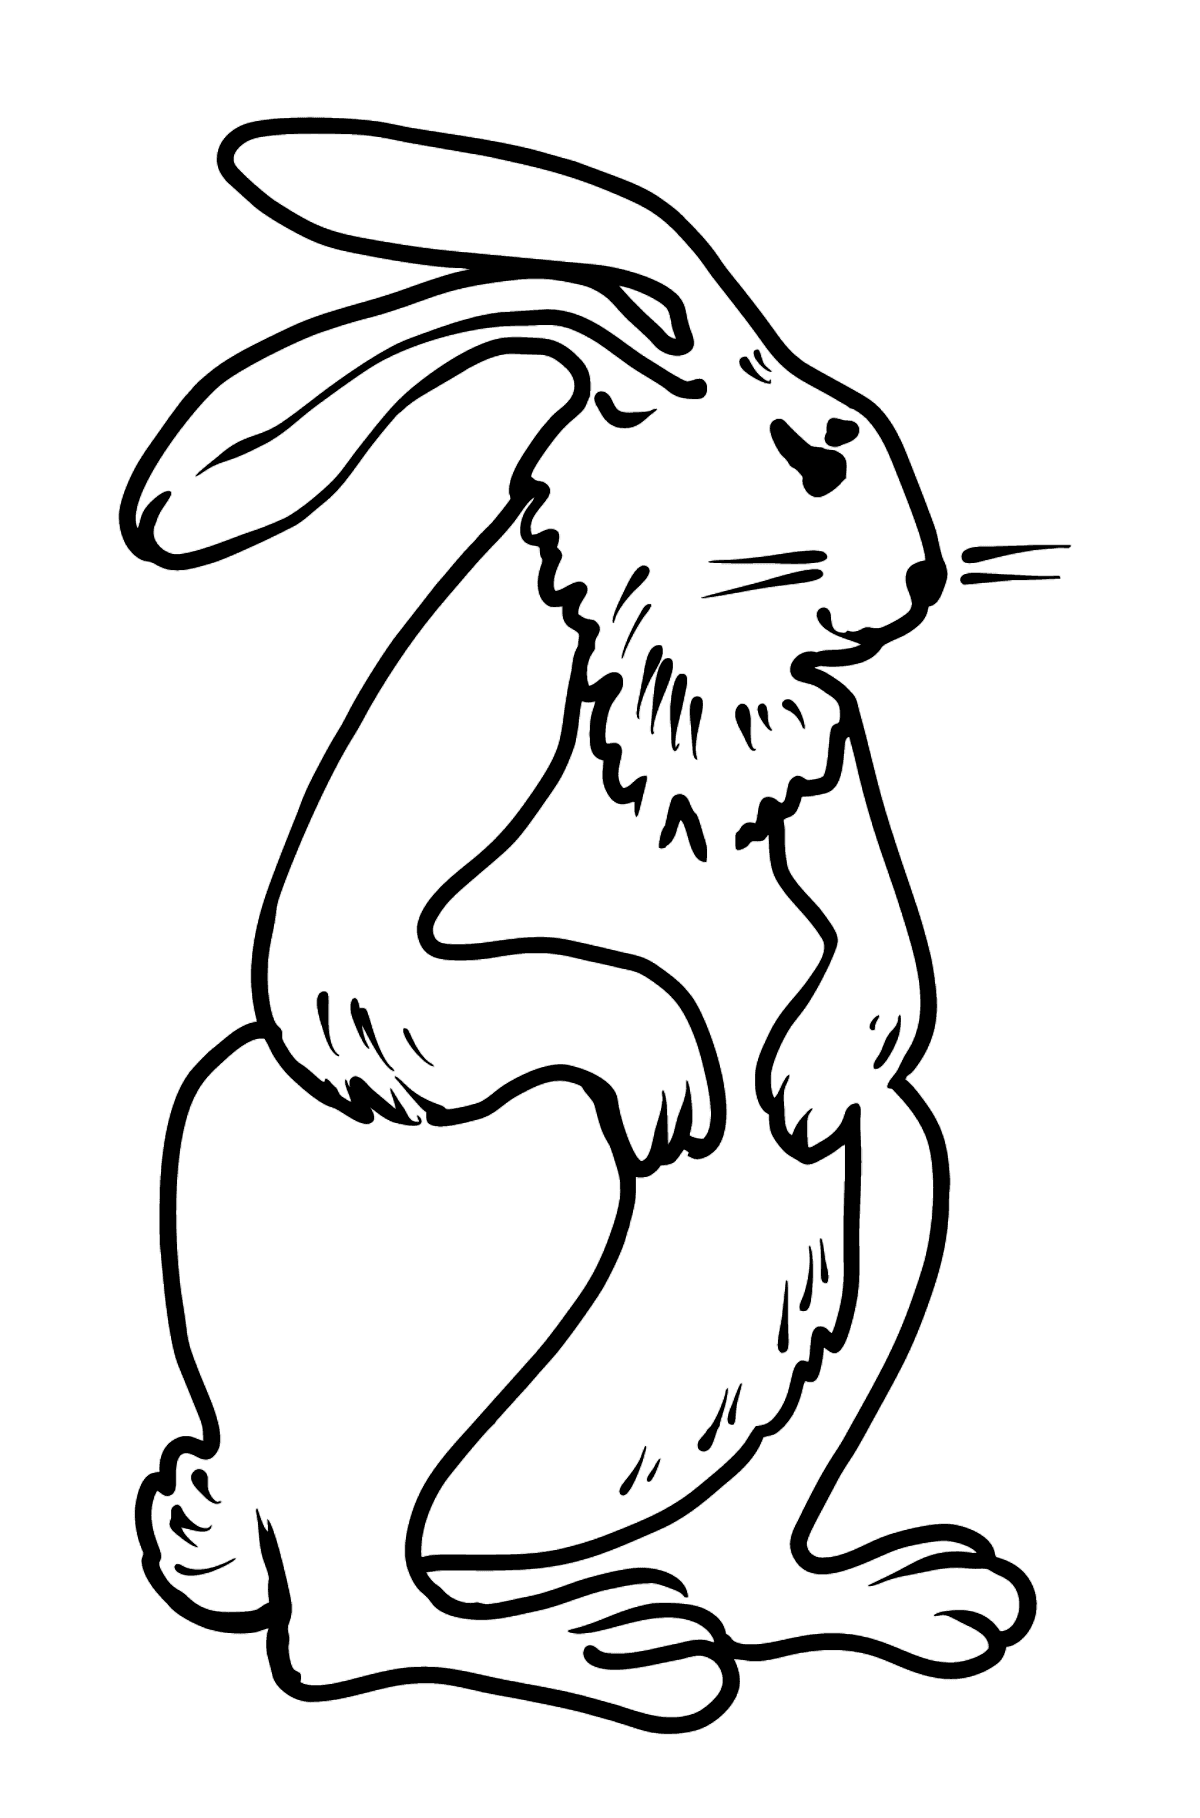 Desenho para colorir do coelho - Imagens para Colorir para Crianças